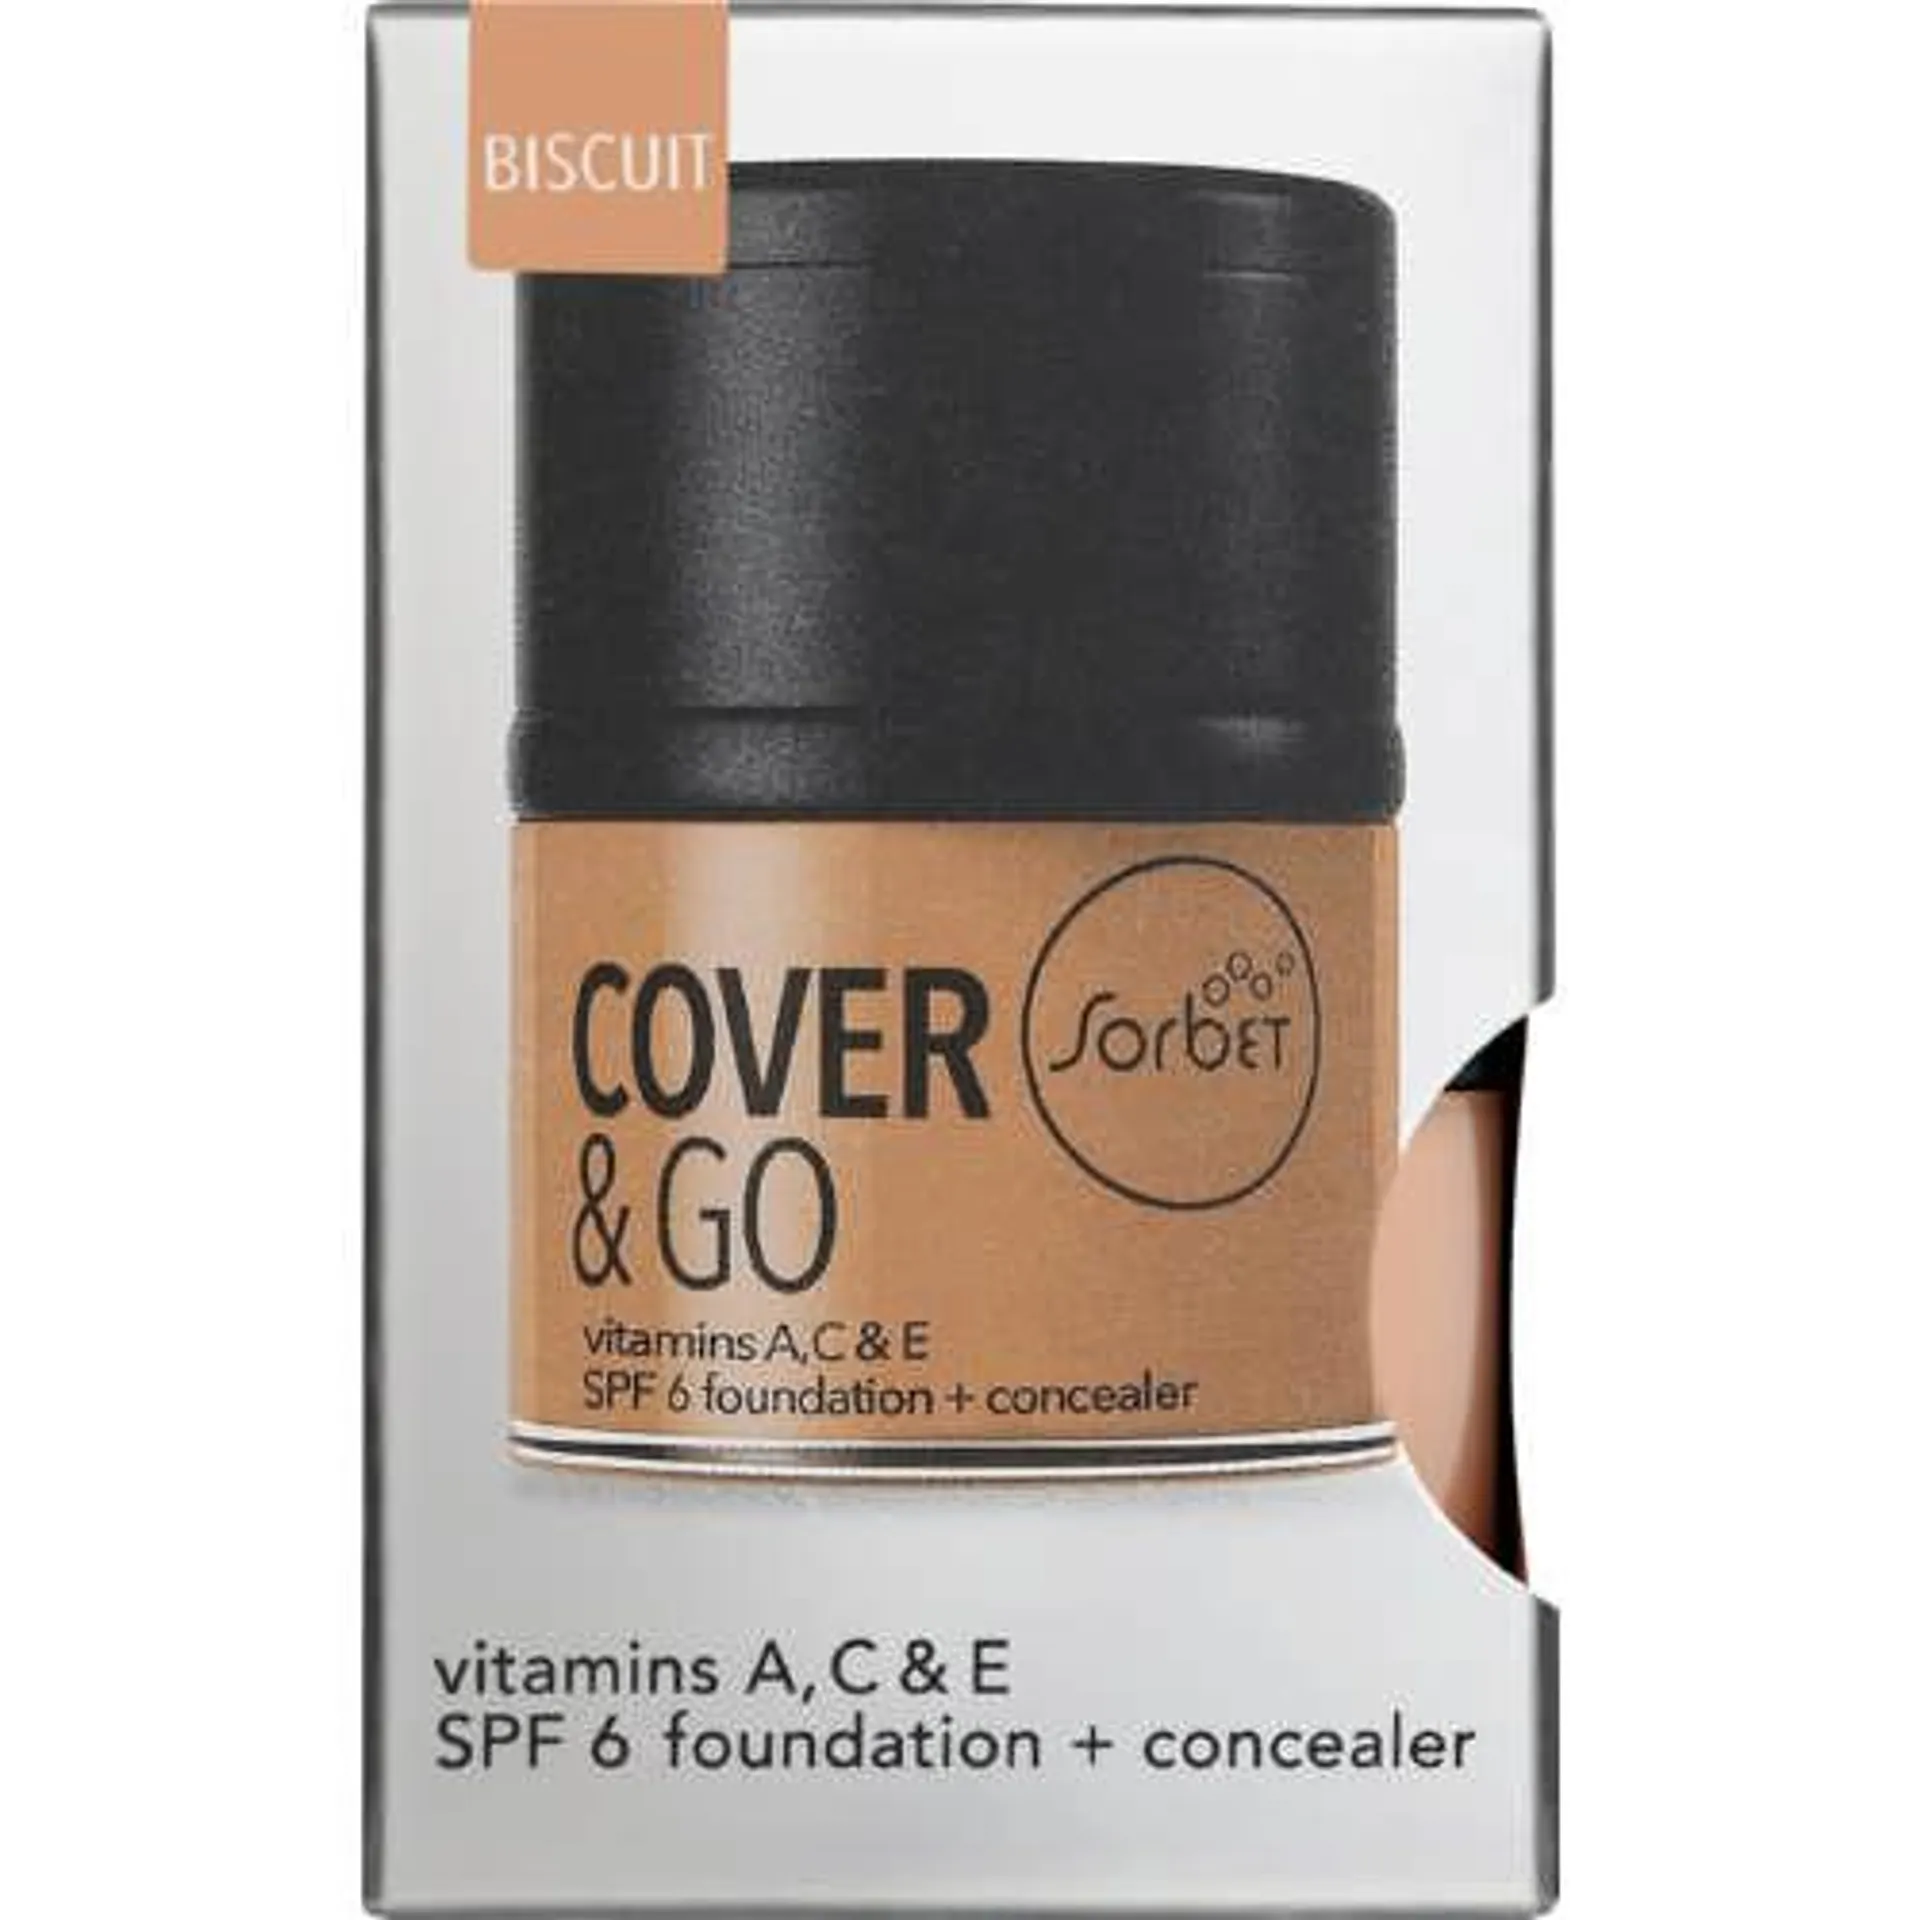 Cover & Go SPF6 Foundation & Concealer Biscuit 25ml + 1.2gr